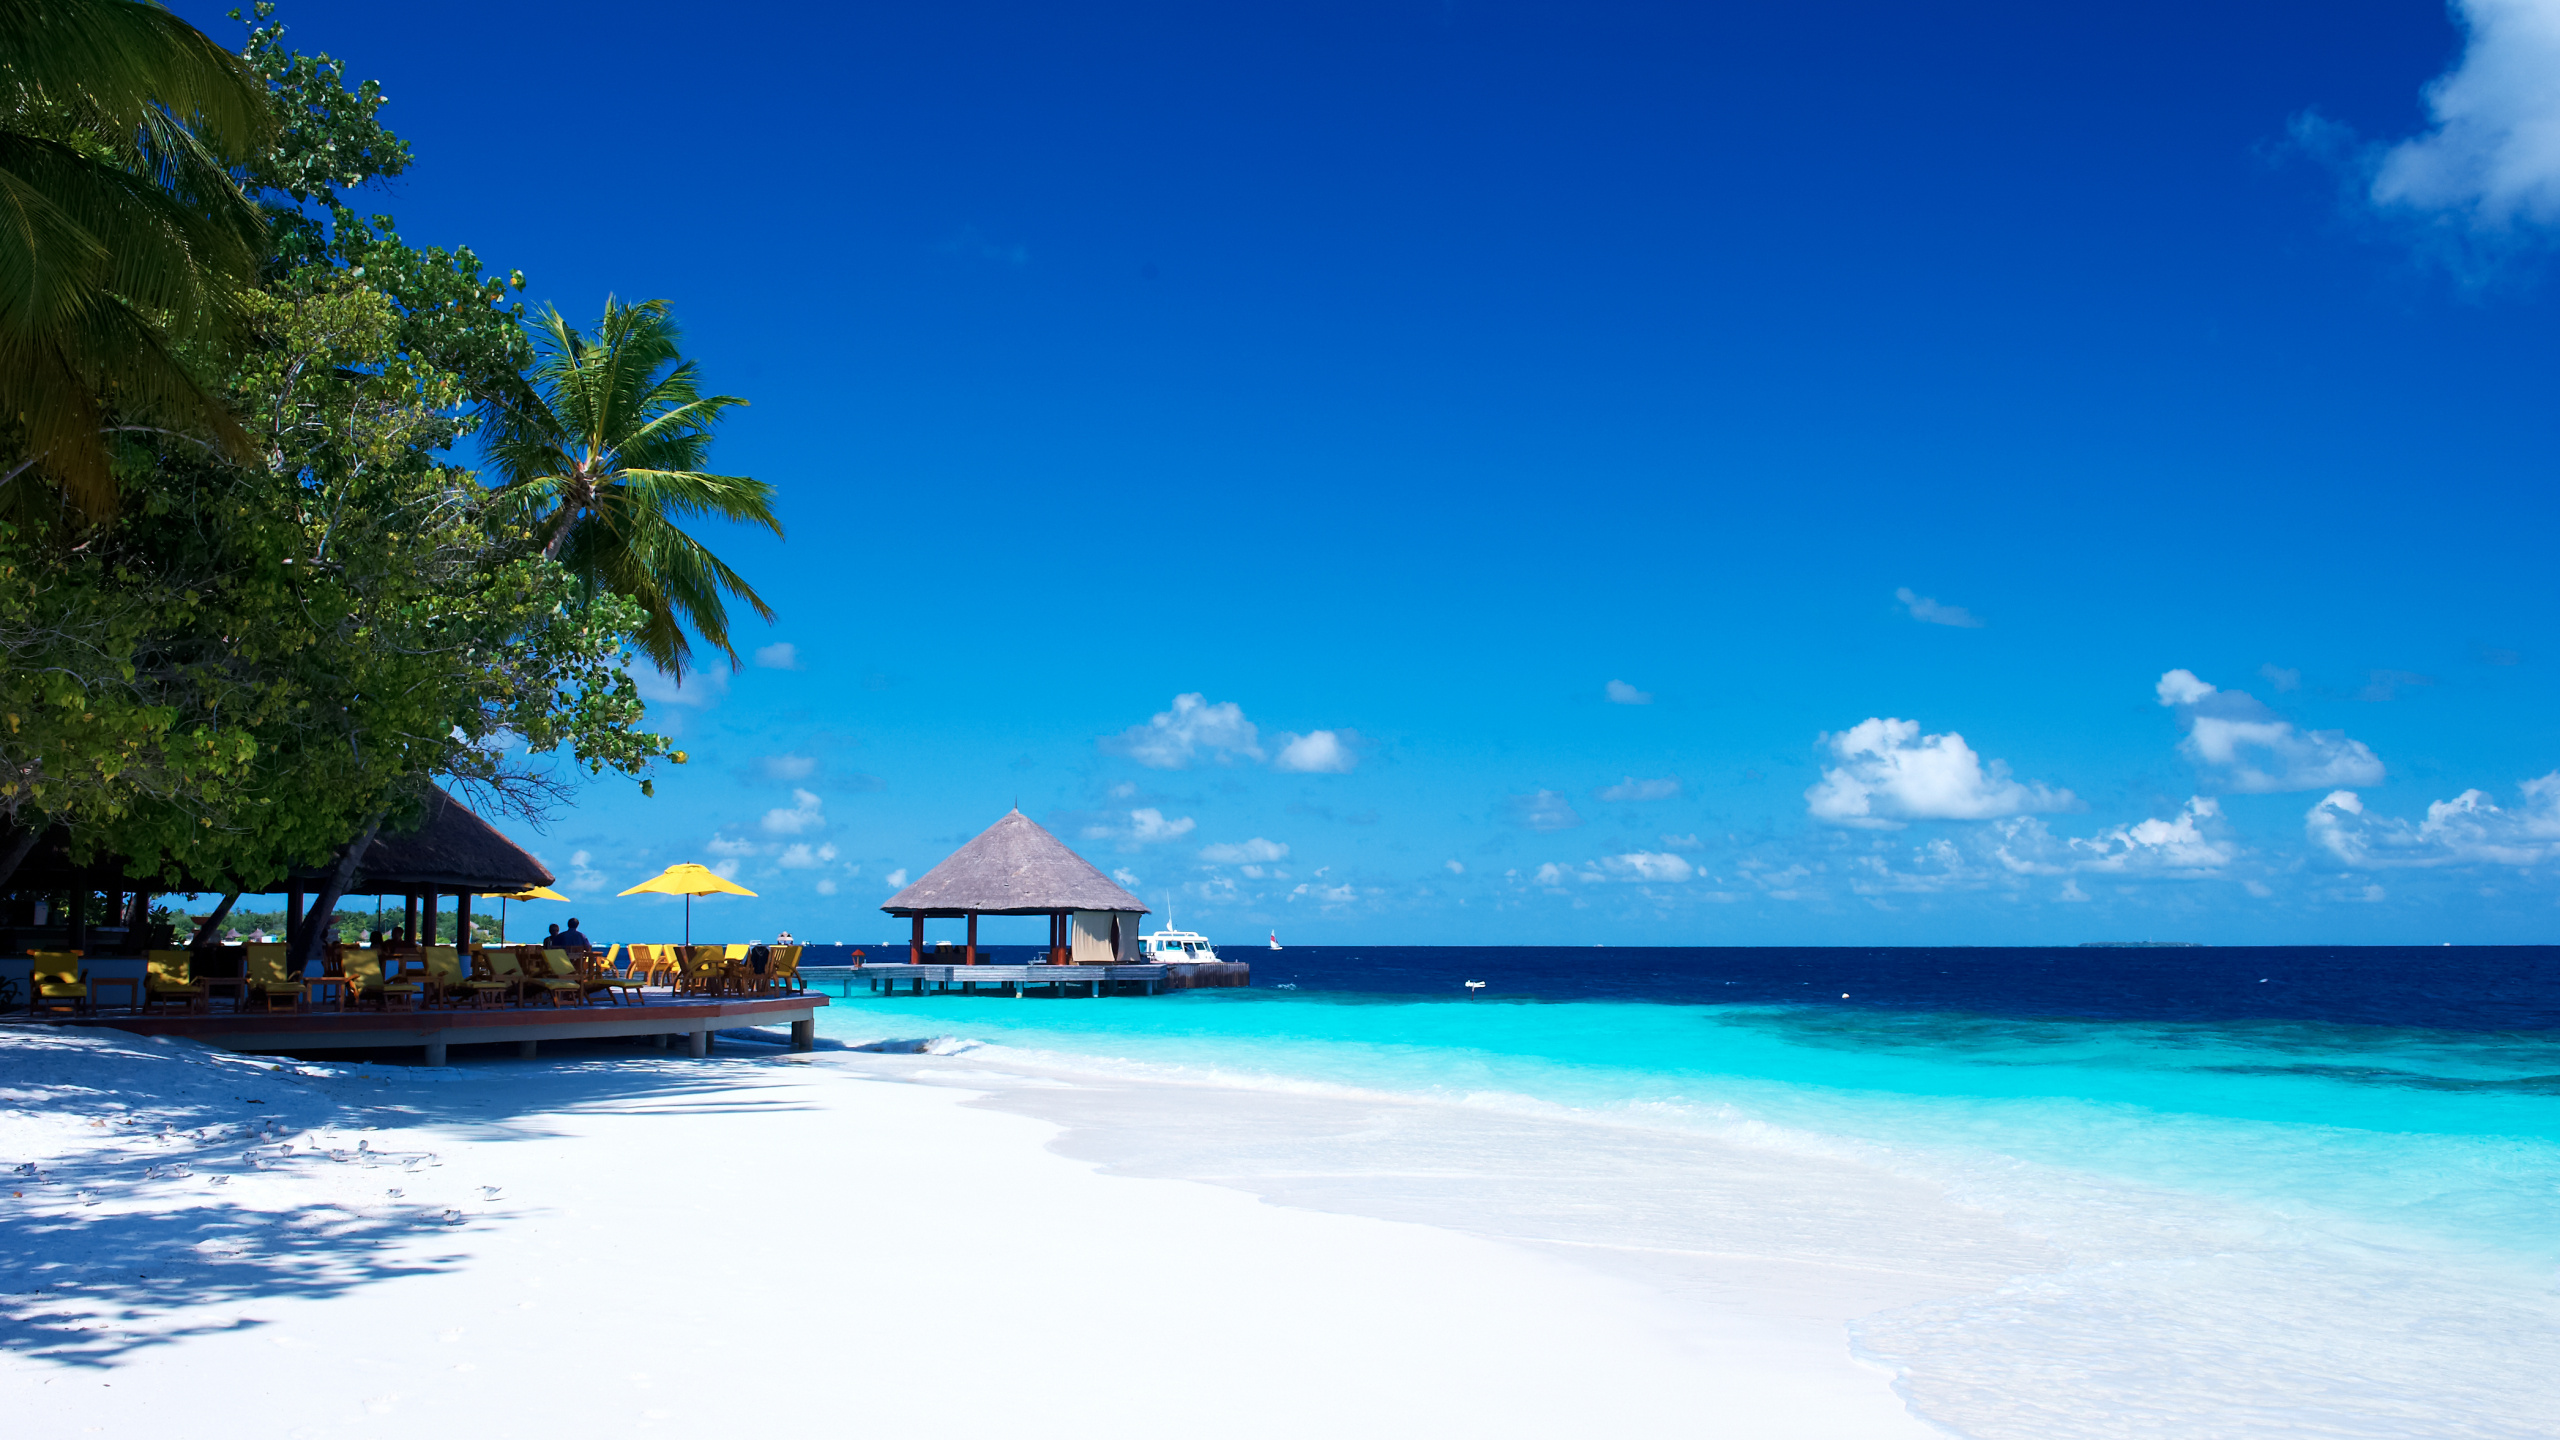 度假村, 度假小岛, 热带地区, 大海, 加勒比 壁纸 2560x1440 允许